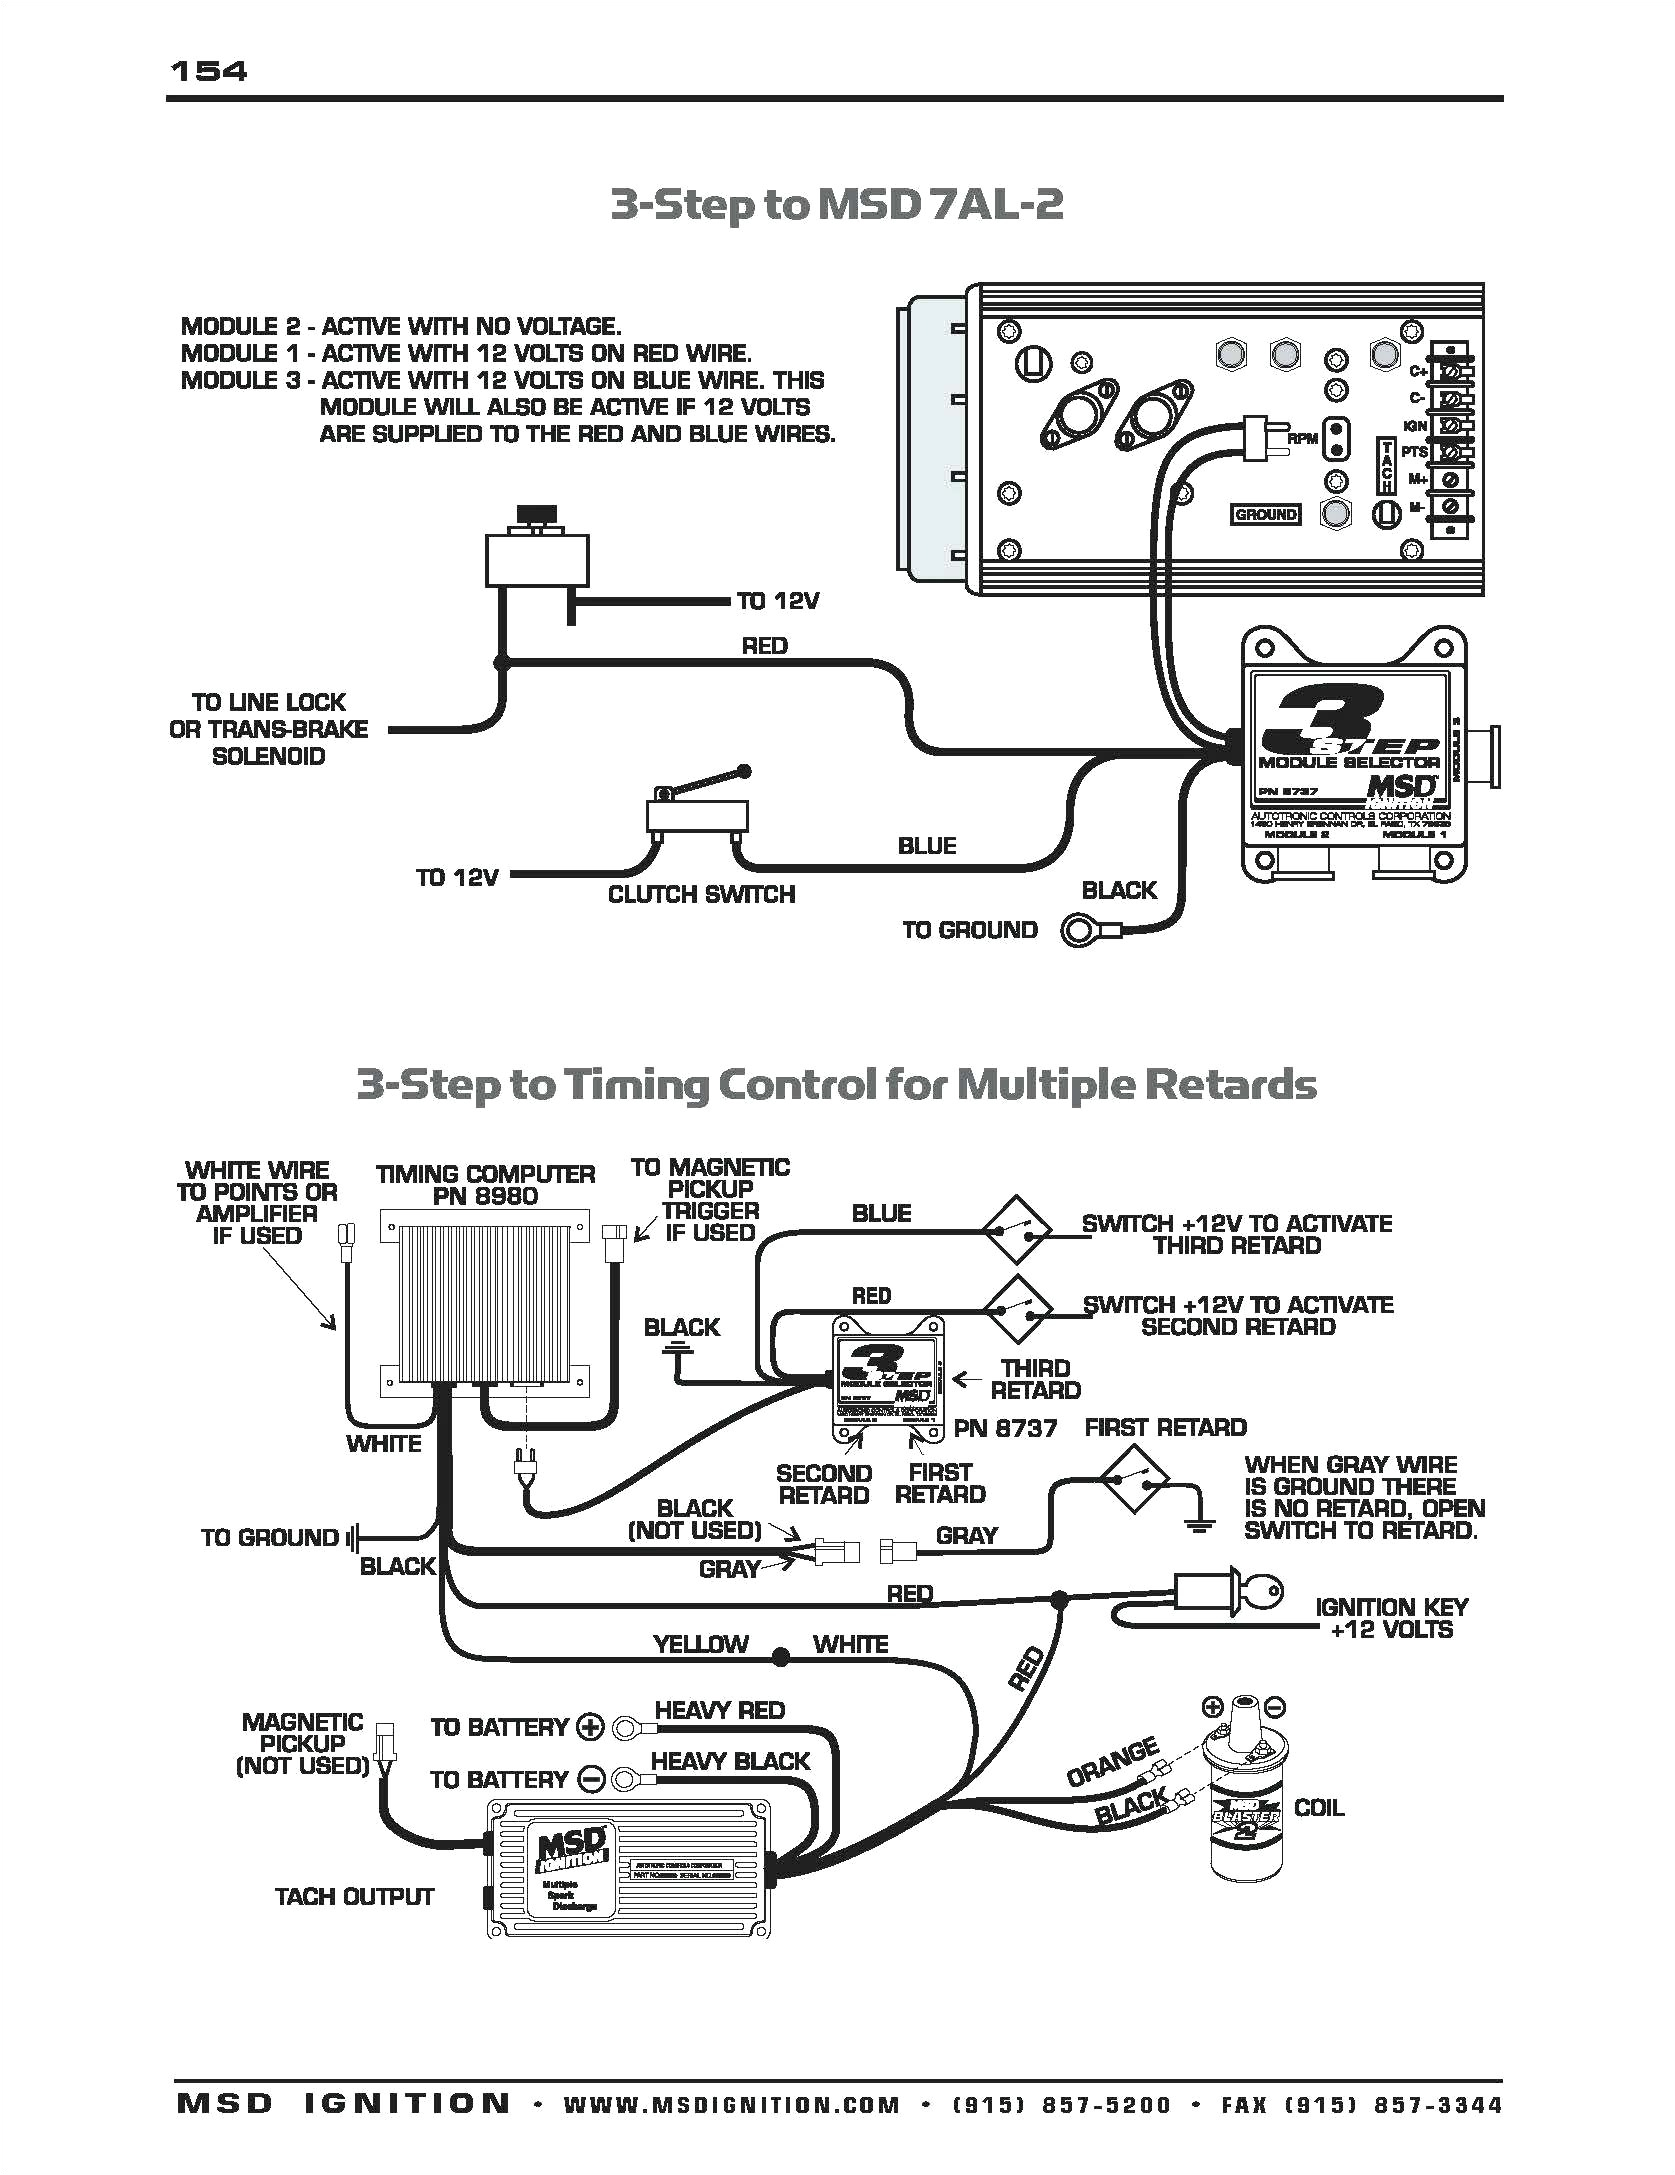 wiring diagram chrysler starter relay wiring diagram chrysler starter relay wiring